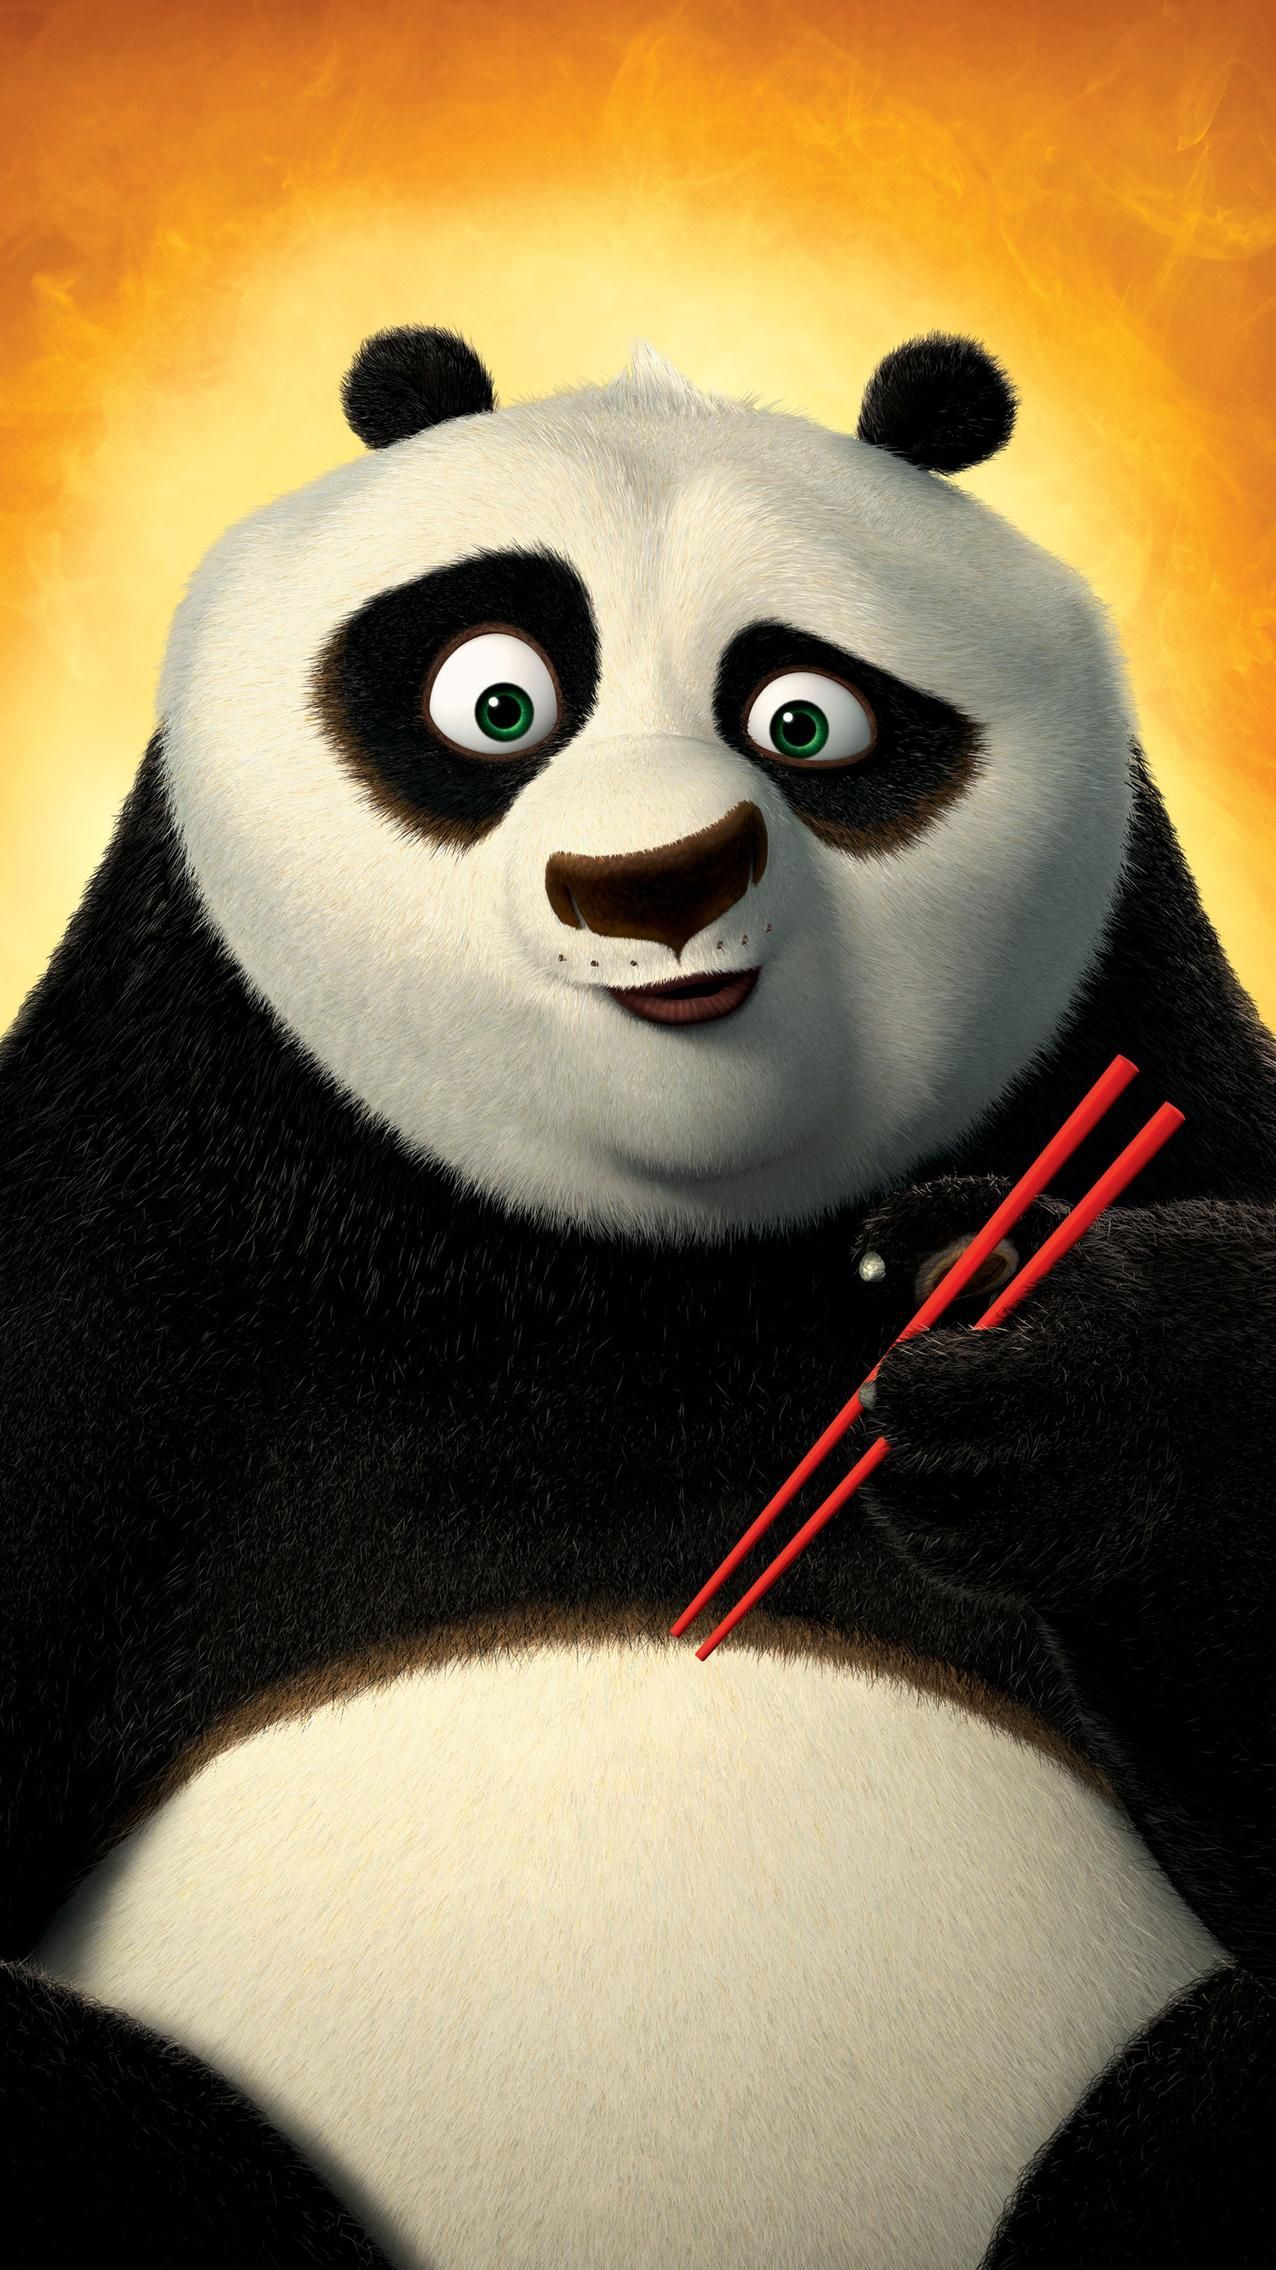 Kung Fu Panda 2 (2011) Phone Wallpaper. Moviemania. Kung fu panda, Panda background, Panda wallpaper